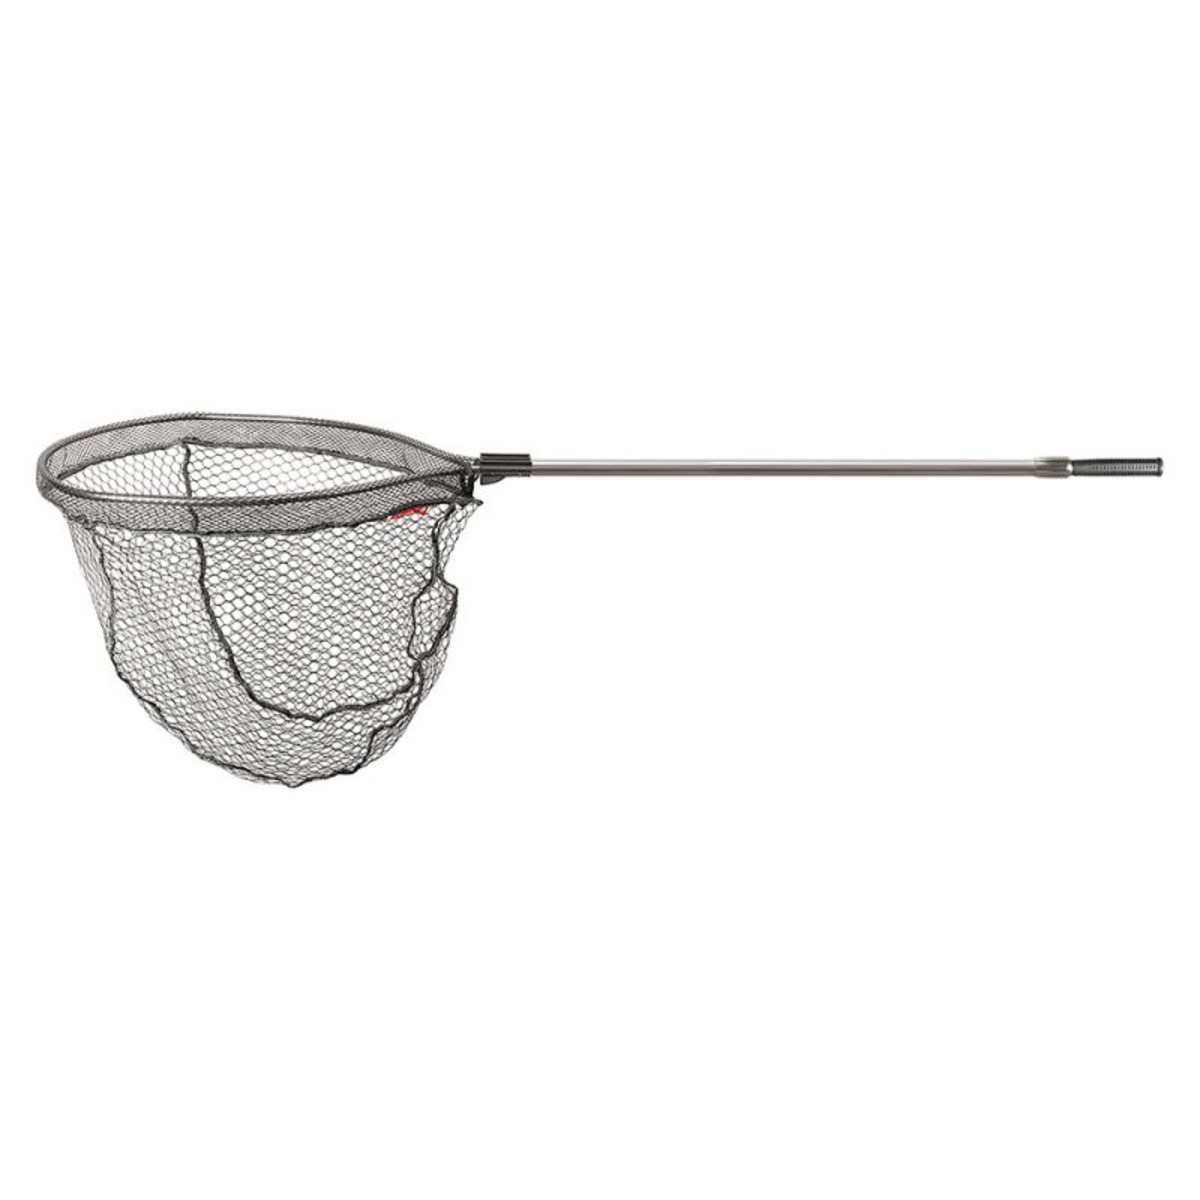 Trabucco Pro Rubba Ladding Nets - 2.20 m - 2 Sez. - 55 x 65/50 cm